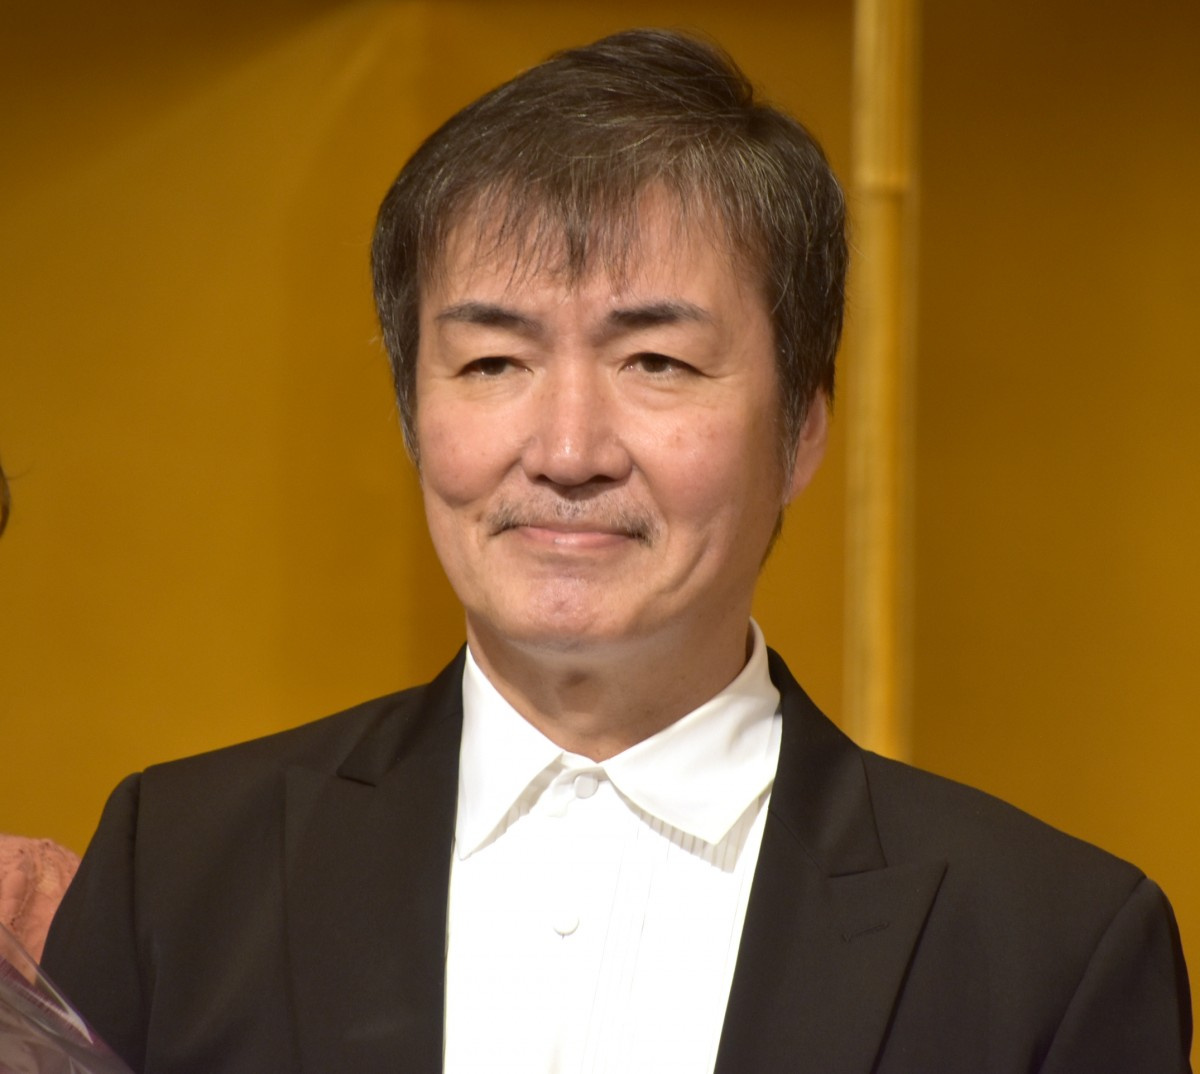 東野圭吾、出版界への貢献で受賞 ユーモアたっぷりにスピーチ「出版界を儲けさせて…」 | ORICON NEWS